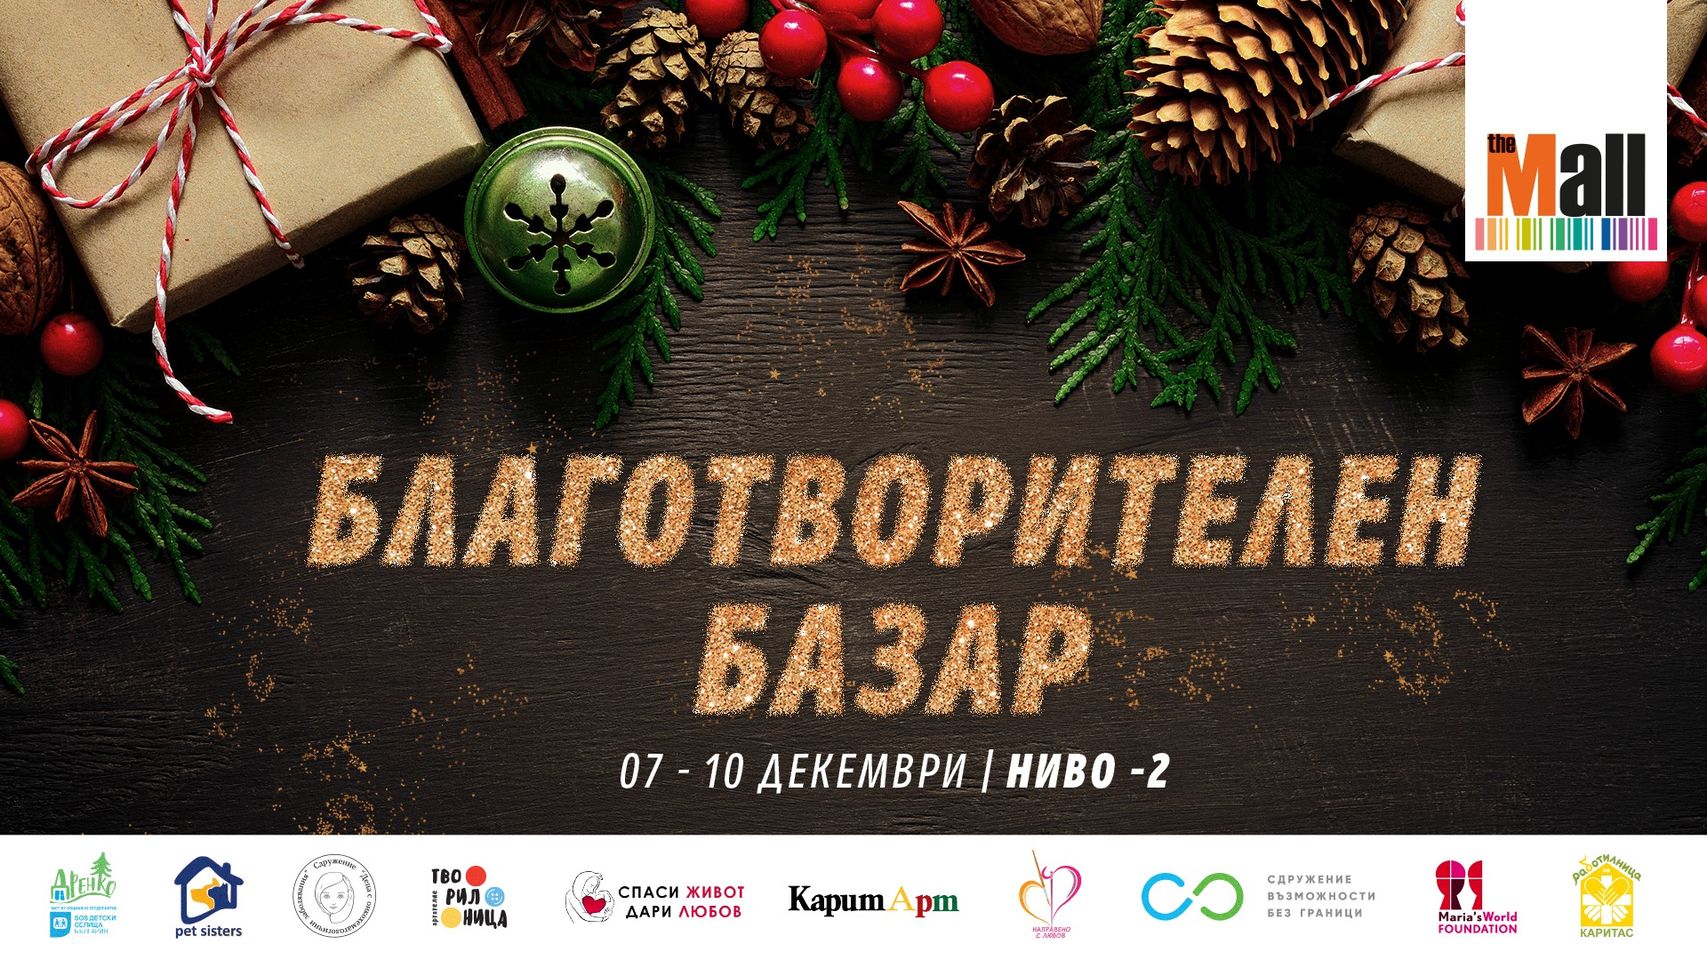 Социално предприятие „Направено с любов 21” търси доброволци за Благотворителен Коледен базар в The Mall Sofia